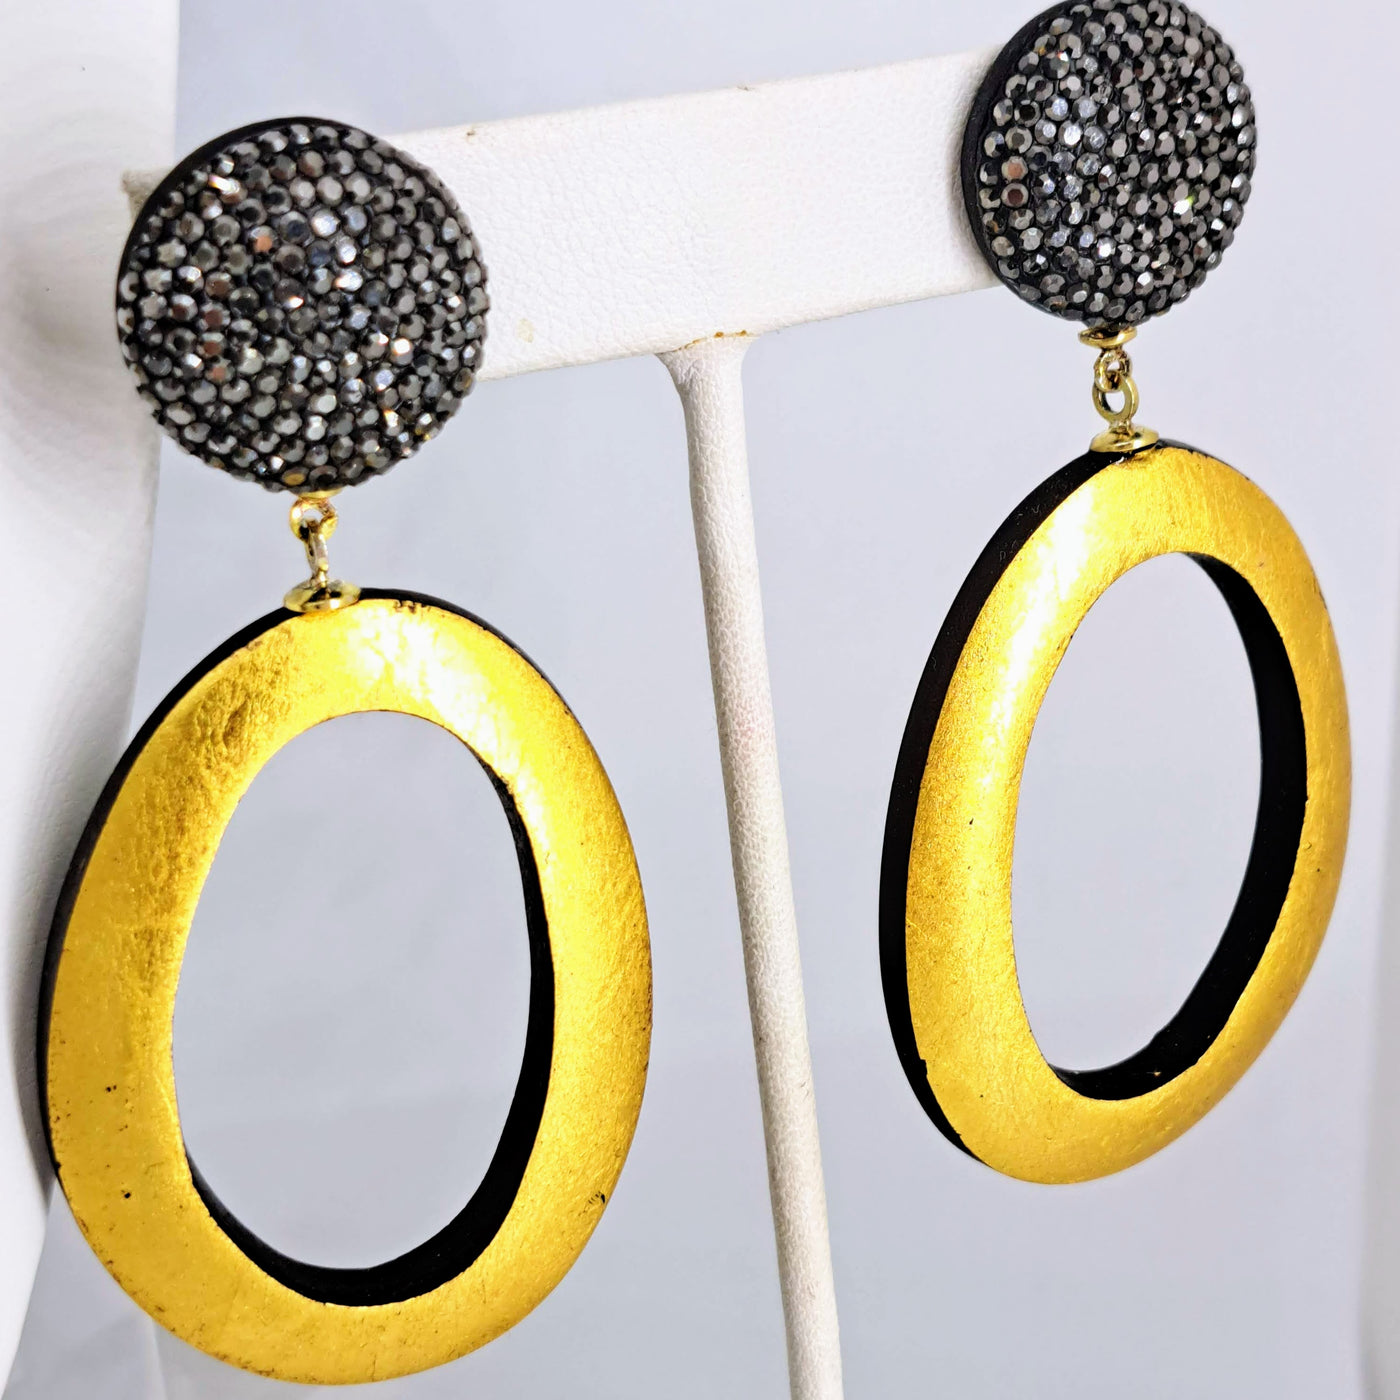 "Sparkle & Shine - Hoop Dangles" 3" Earrings - Ebony, 24K Gold Leaf, Swarovski Pave', Sterling Posts